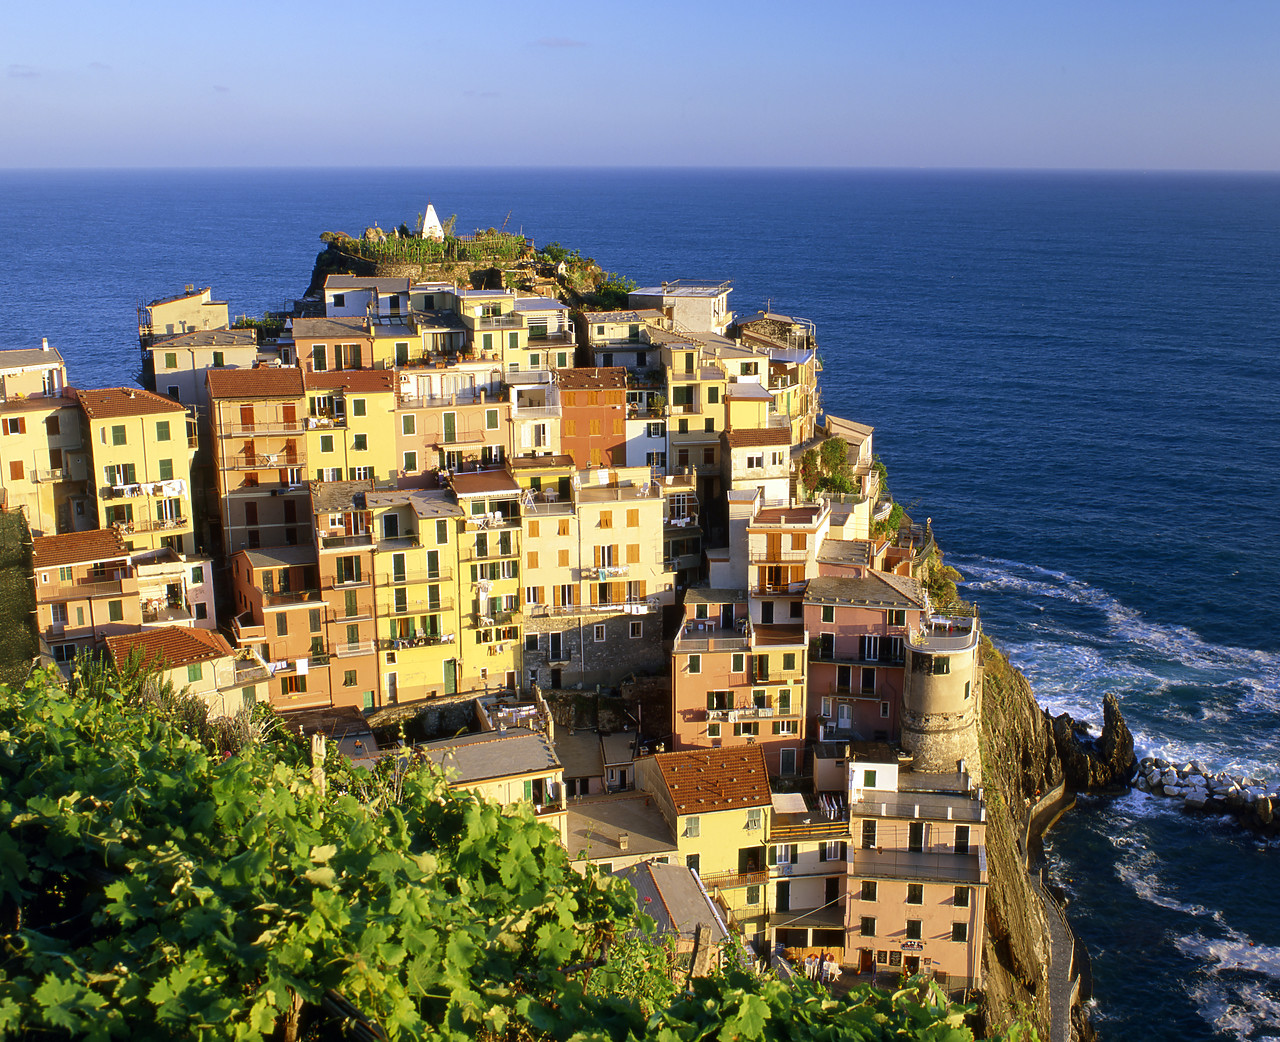 #020161-4 - View over Manarola, Cinque Terre, Liguria, Italy